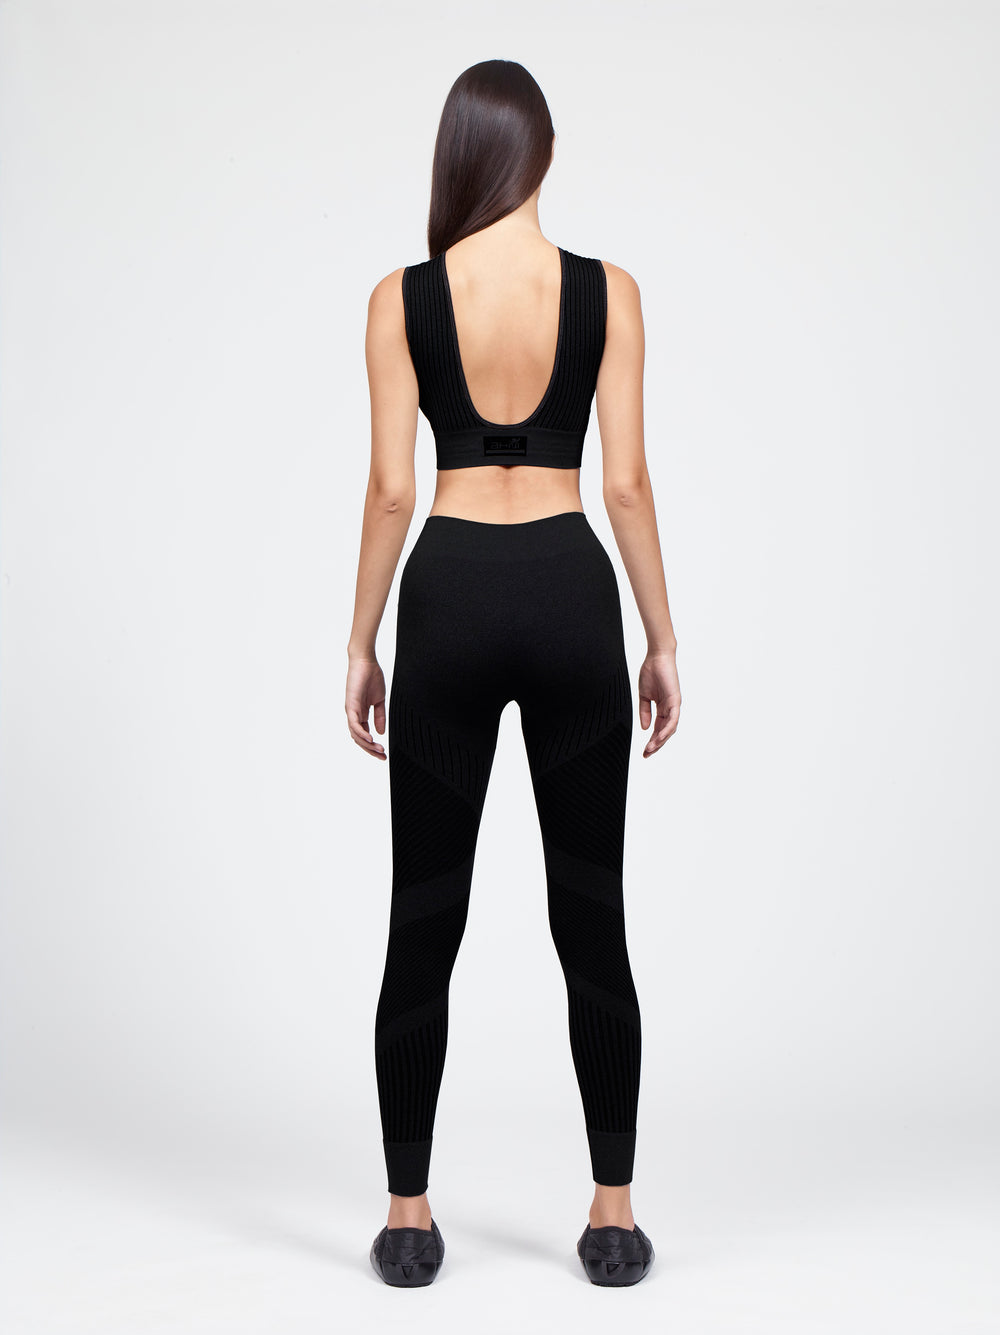 bare back sport bra with flow legging set black